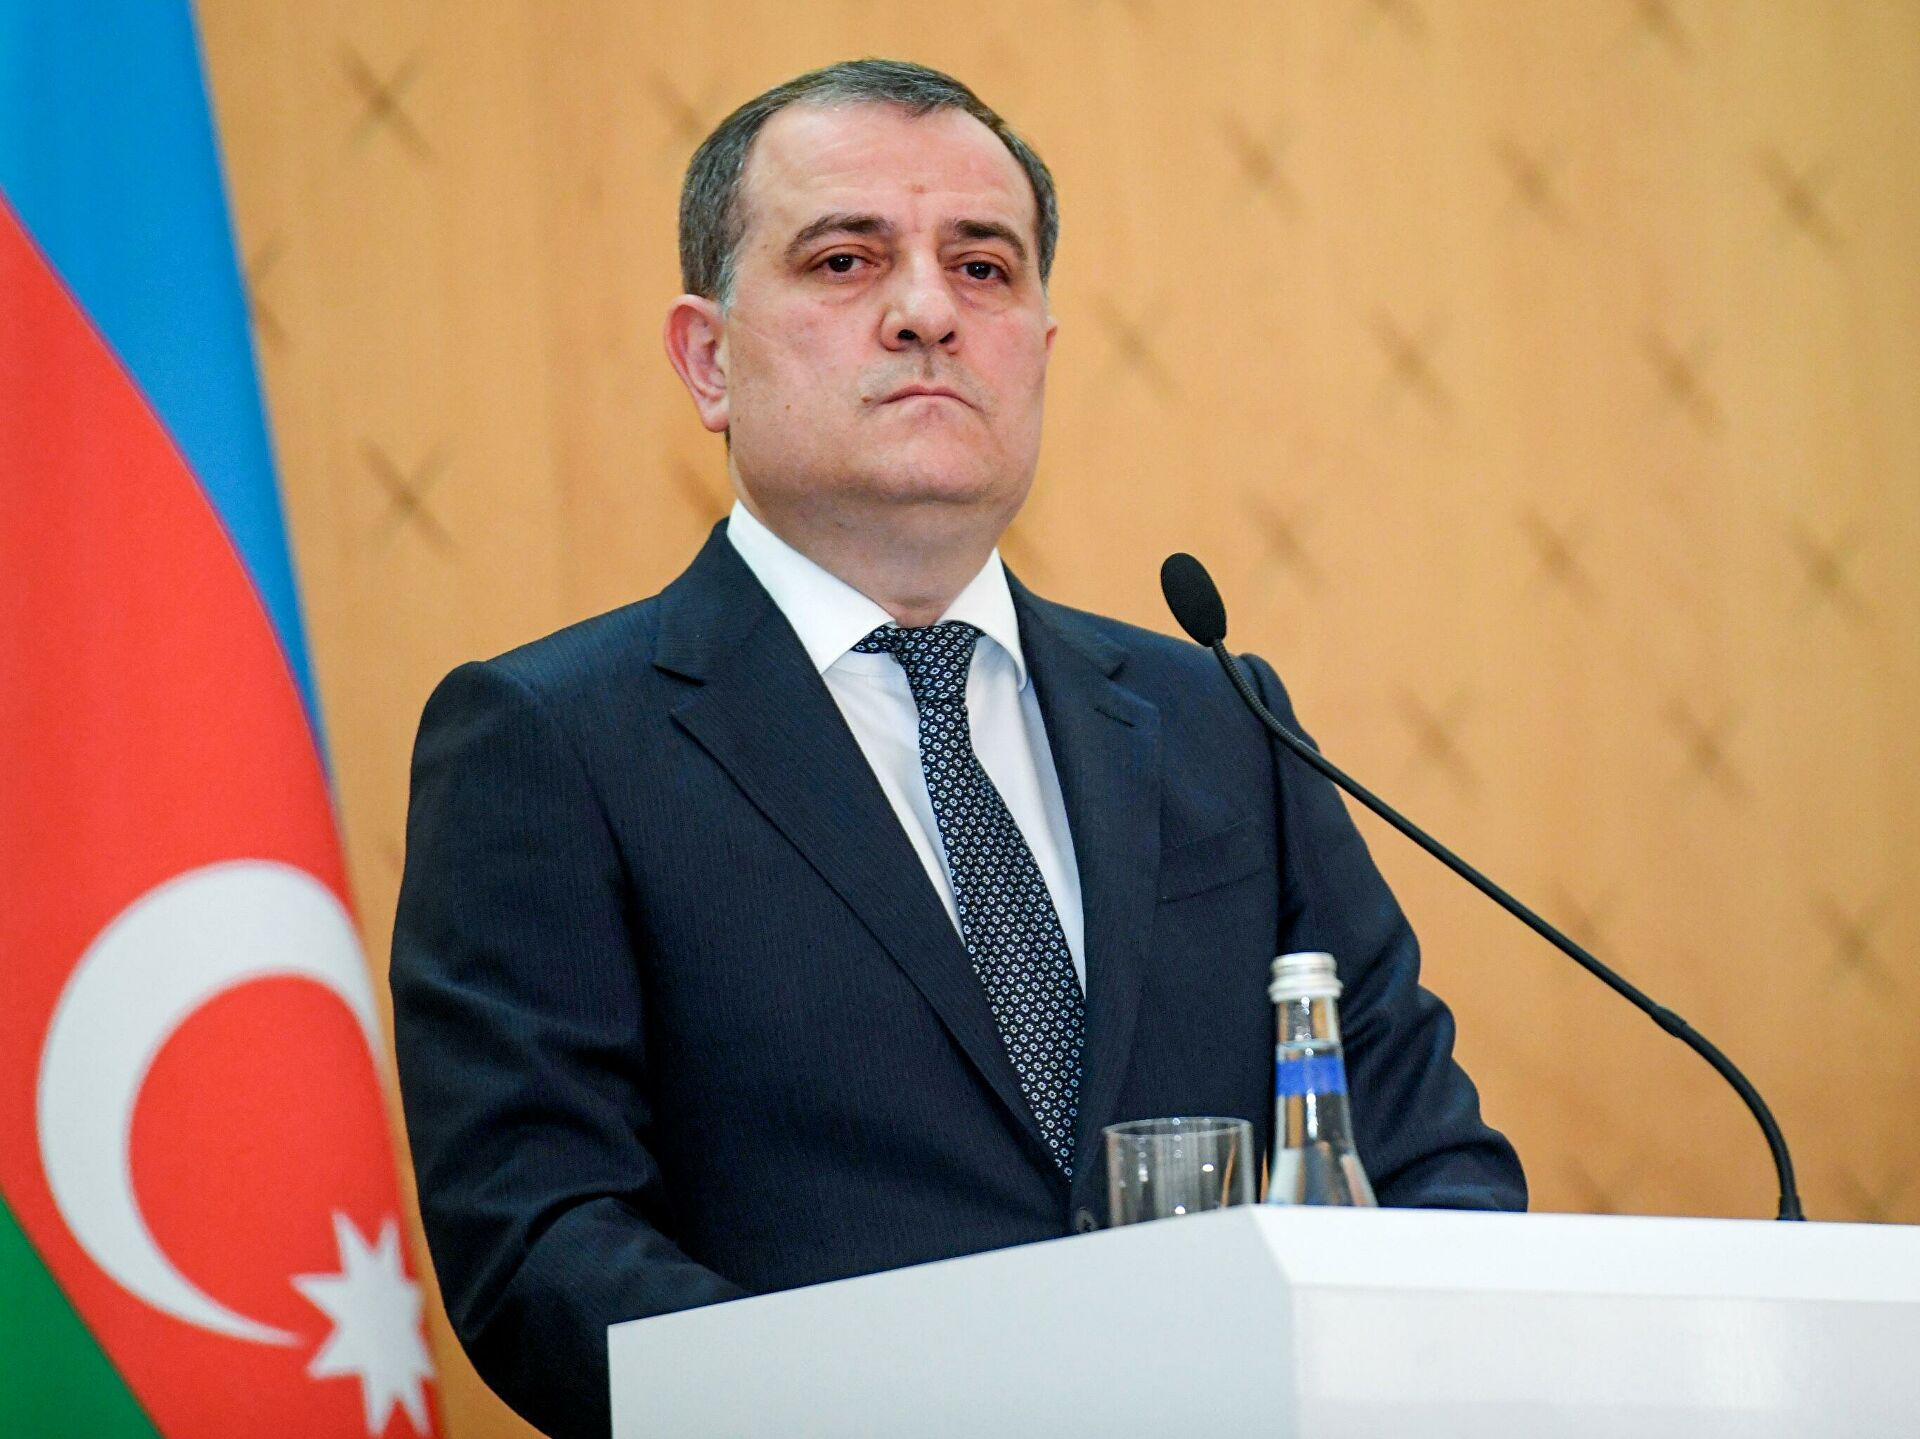 Джейхун Байрамов: Действия Армении мешают реализации трехстороннего заявления